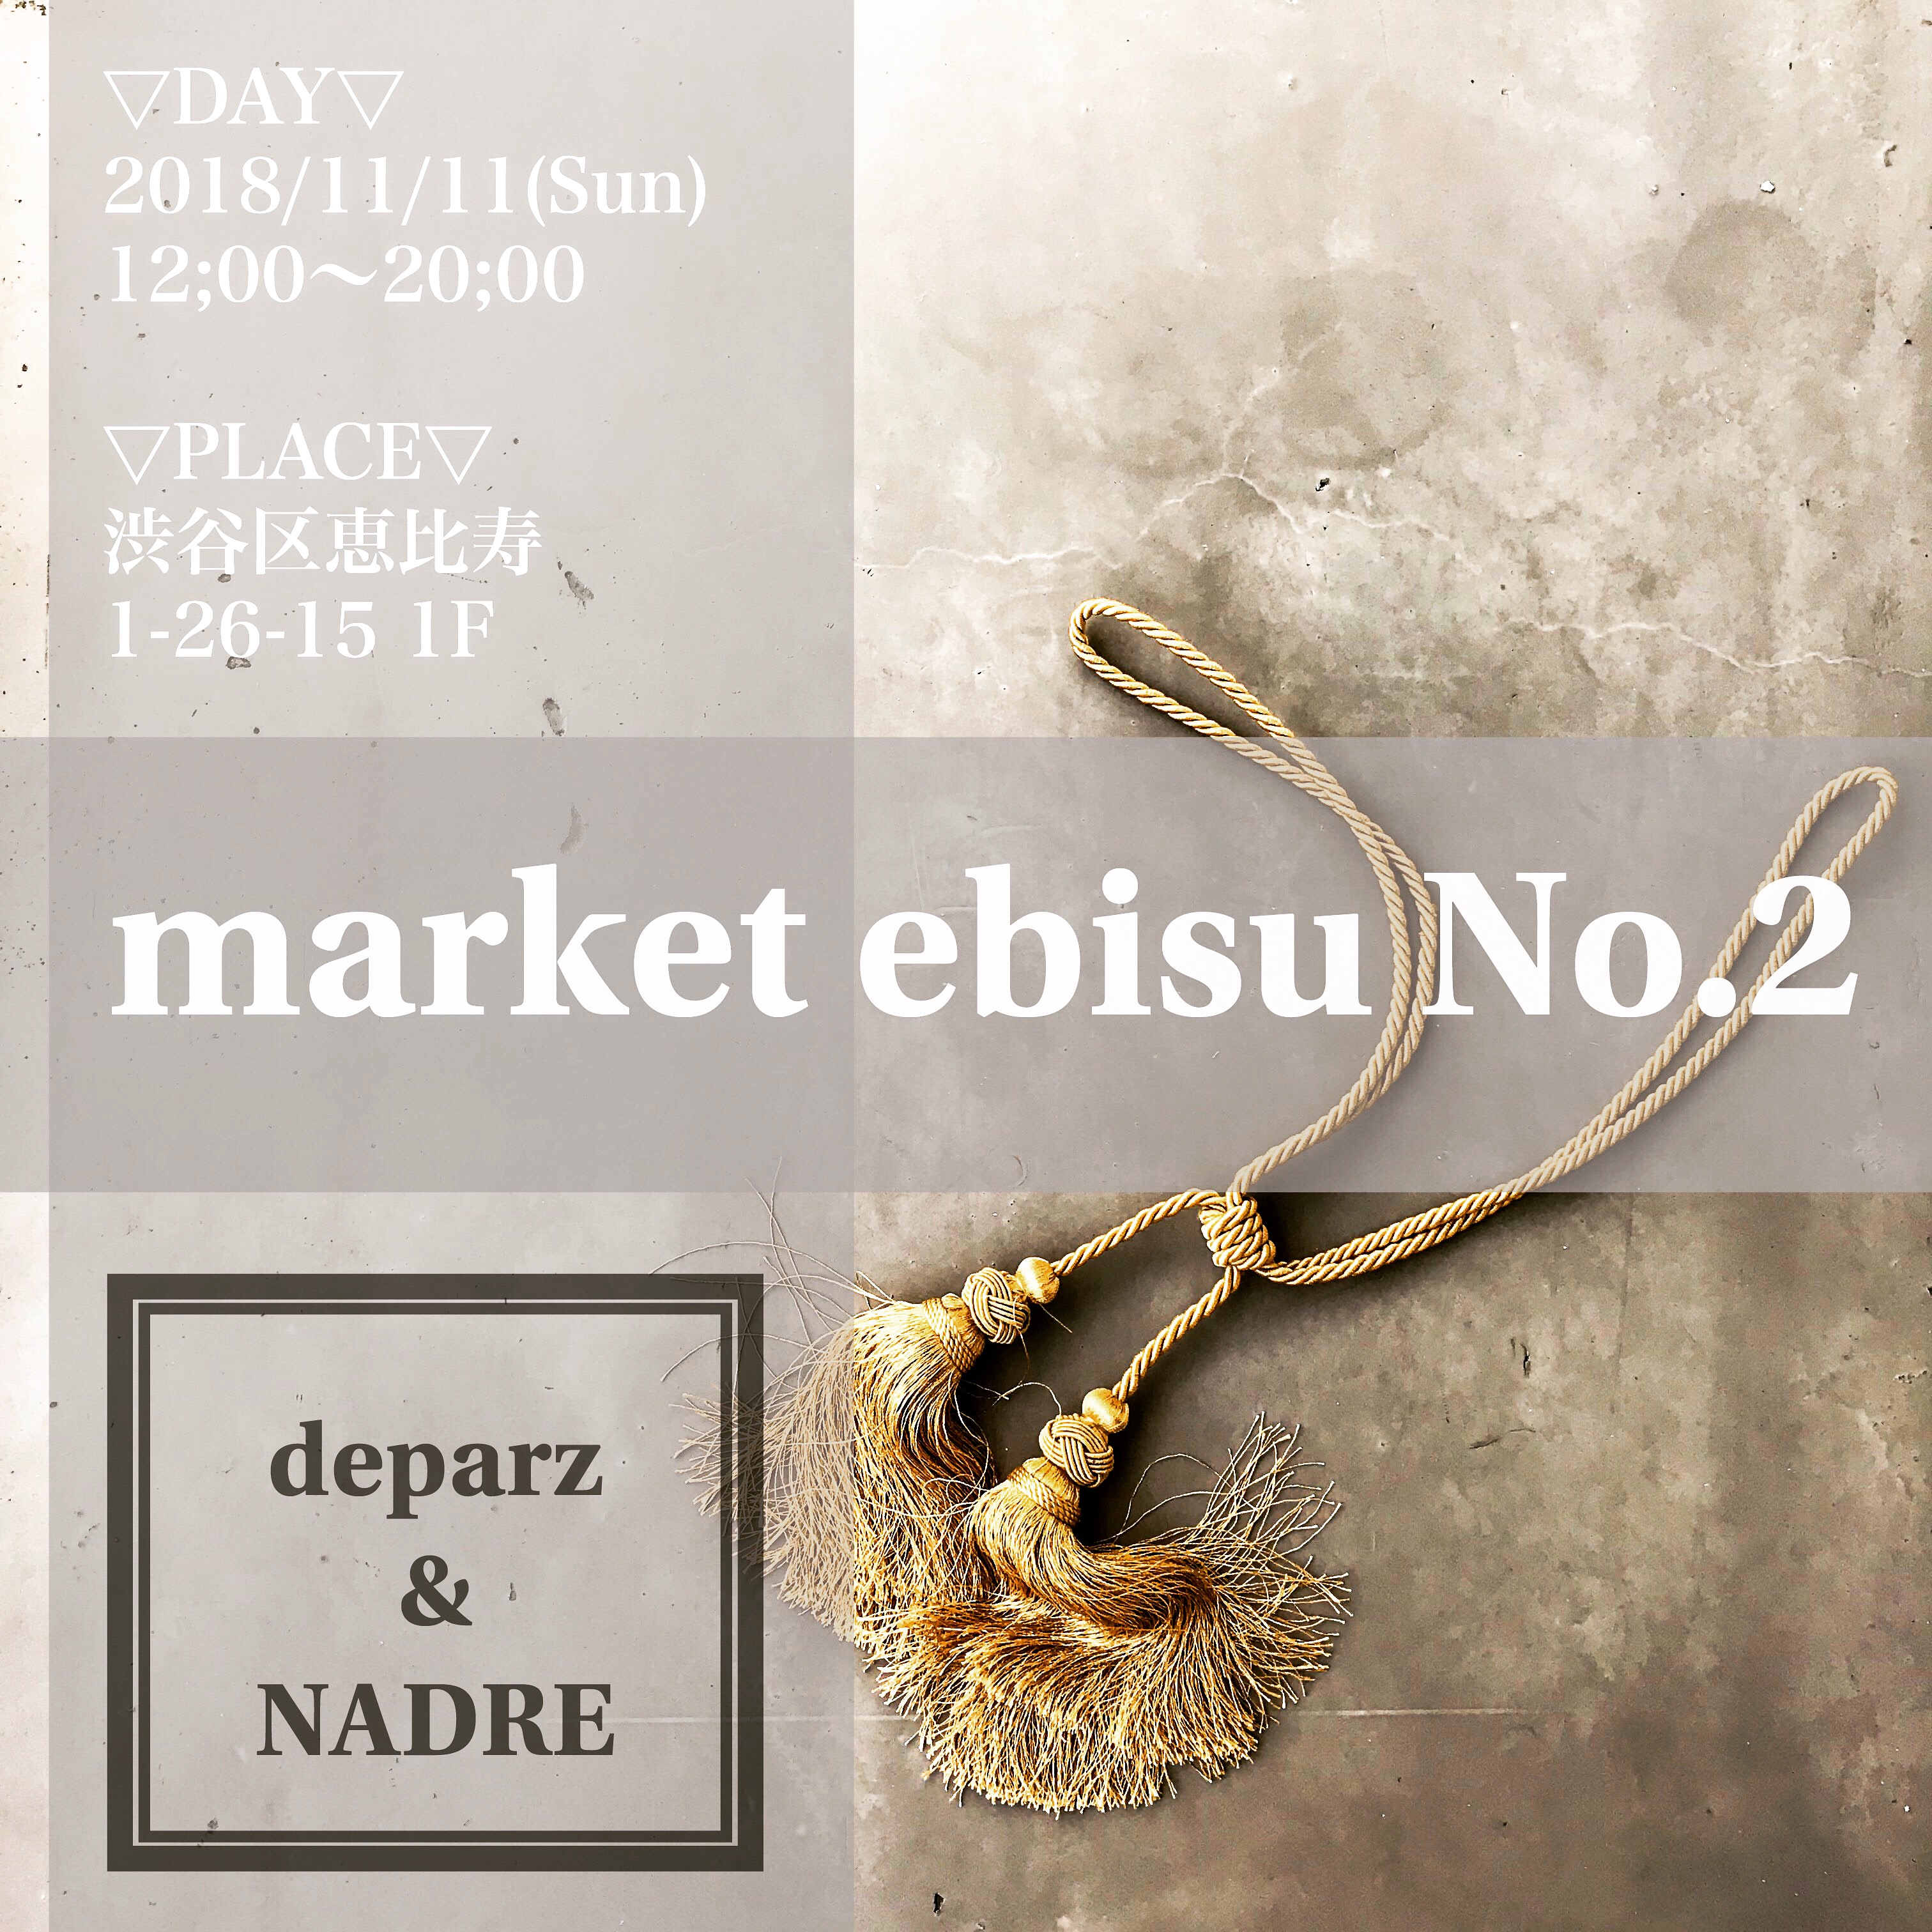 2018/11/11(日) market ebisu no.2